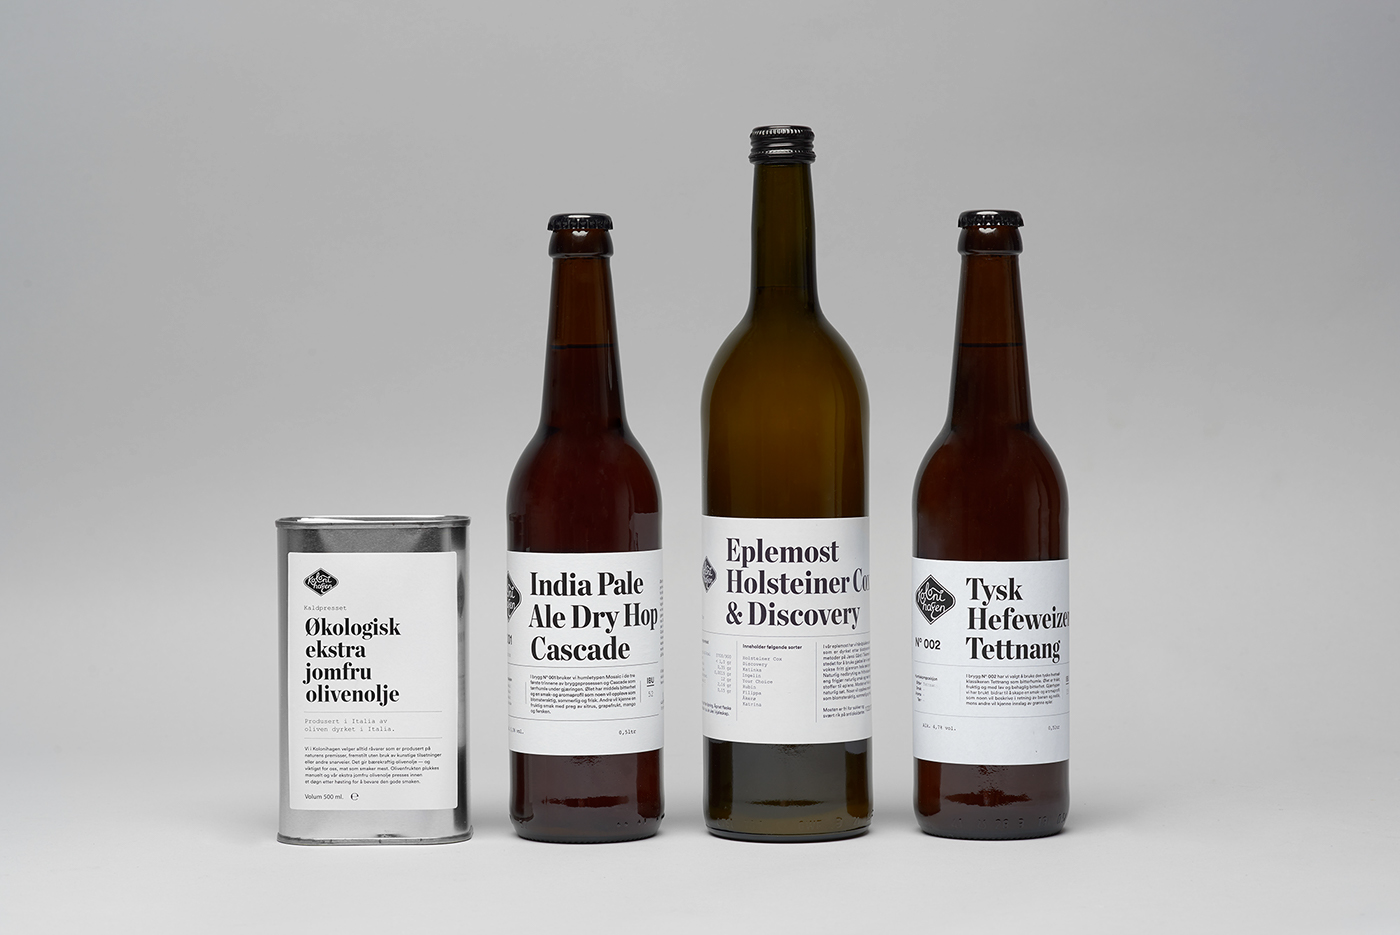 kolonihagen beer olive oil juice apple ecological bottle can